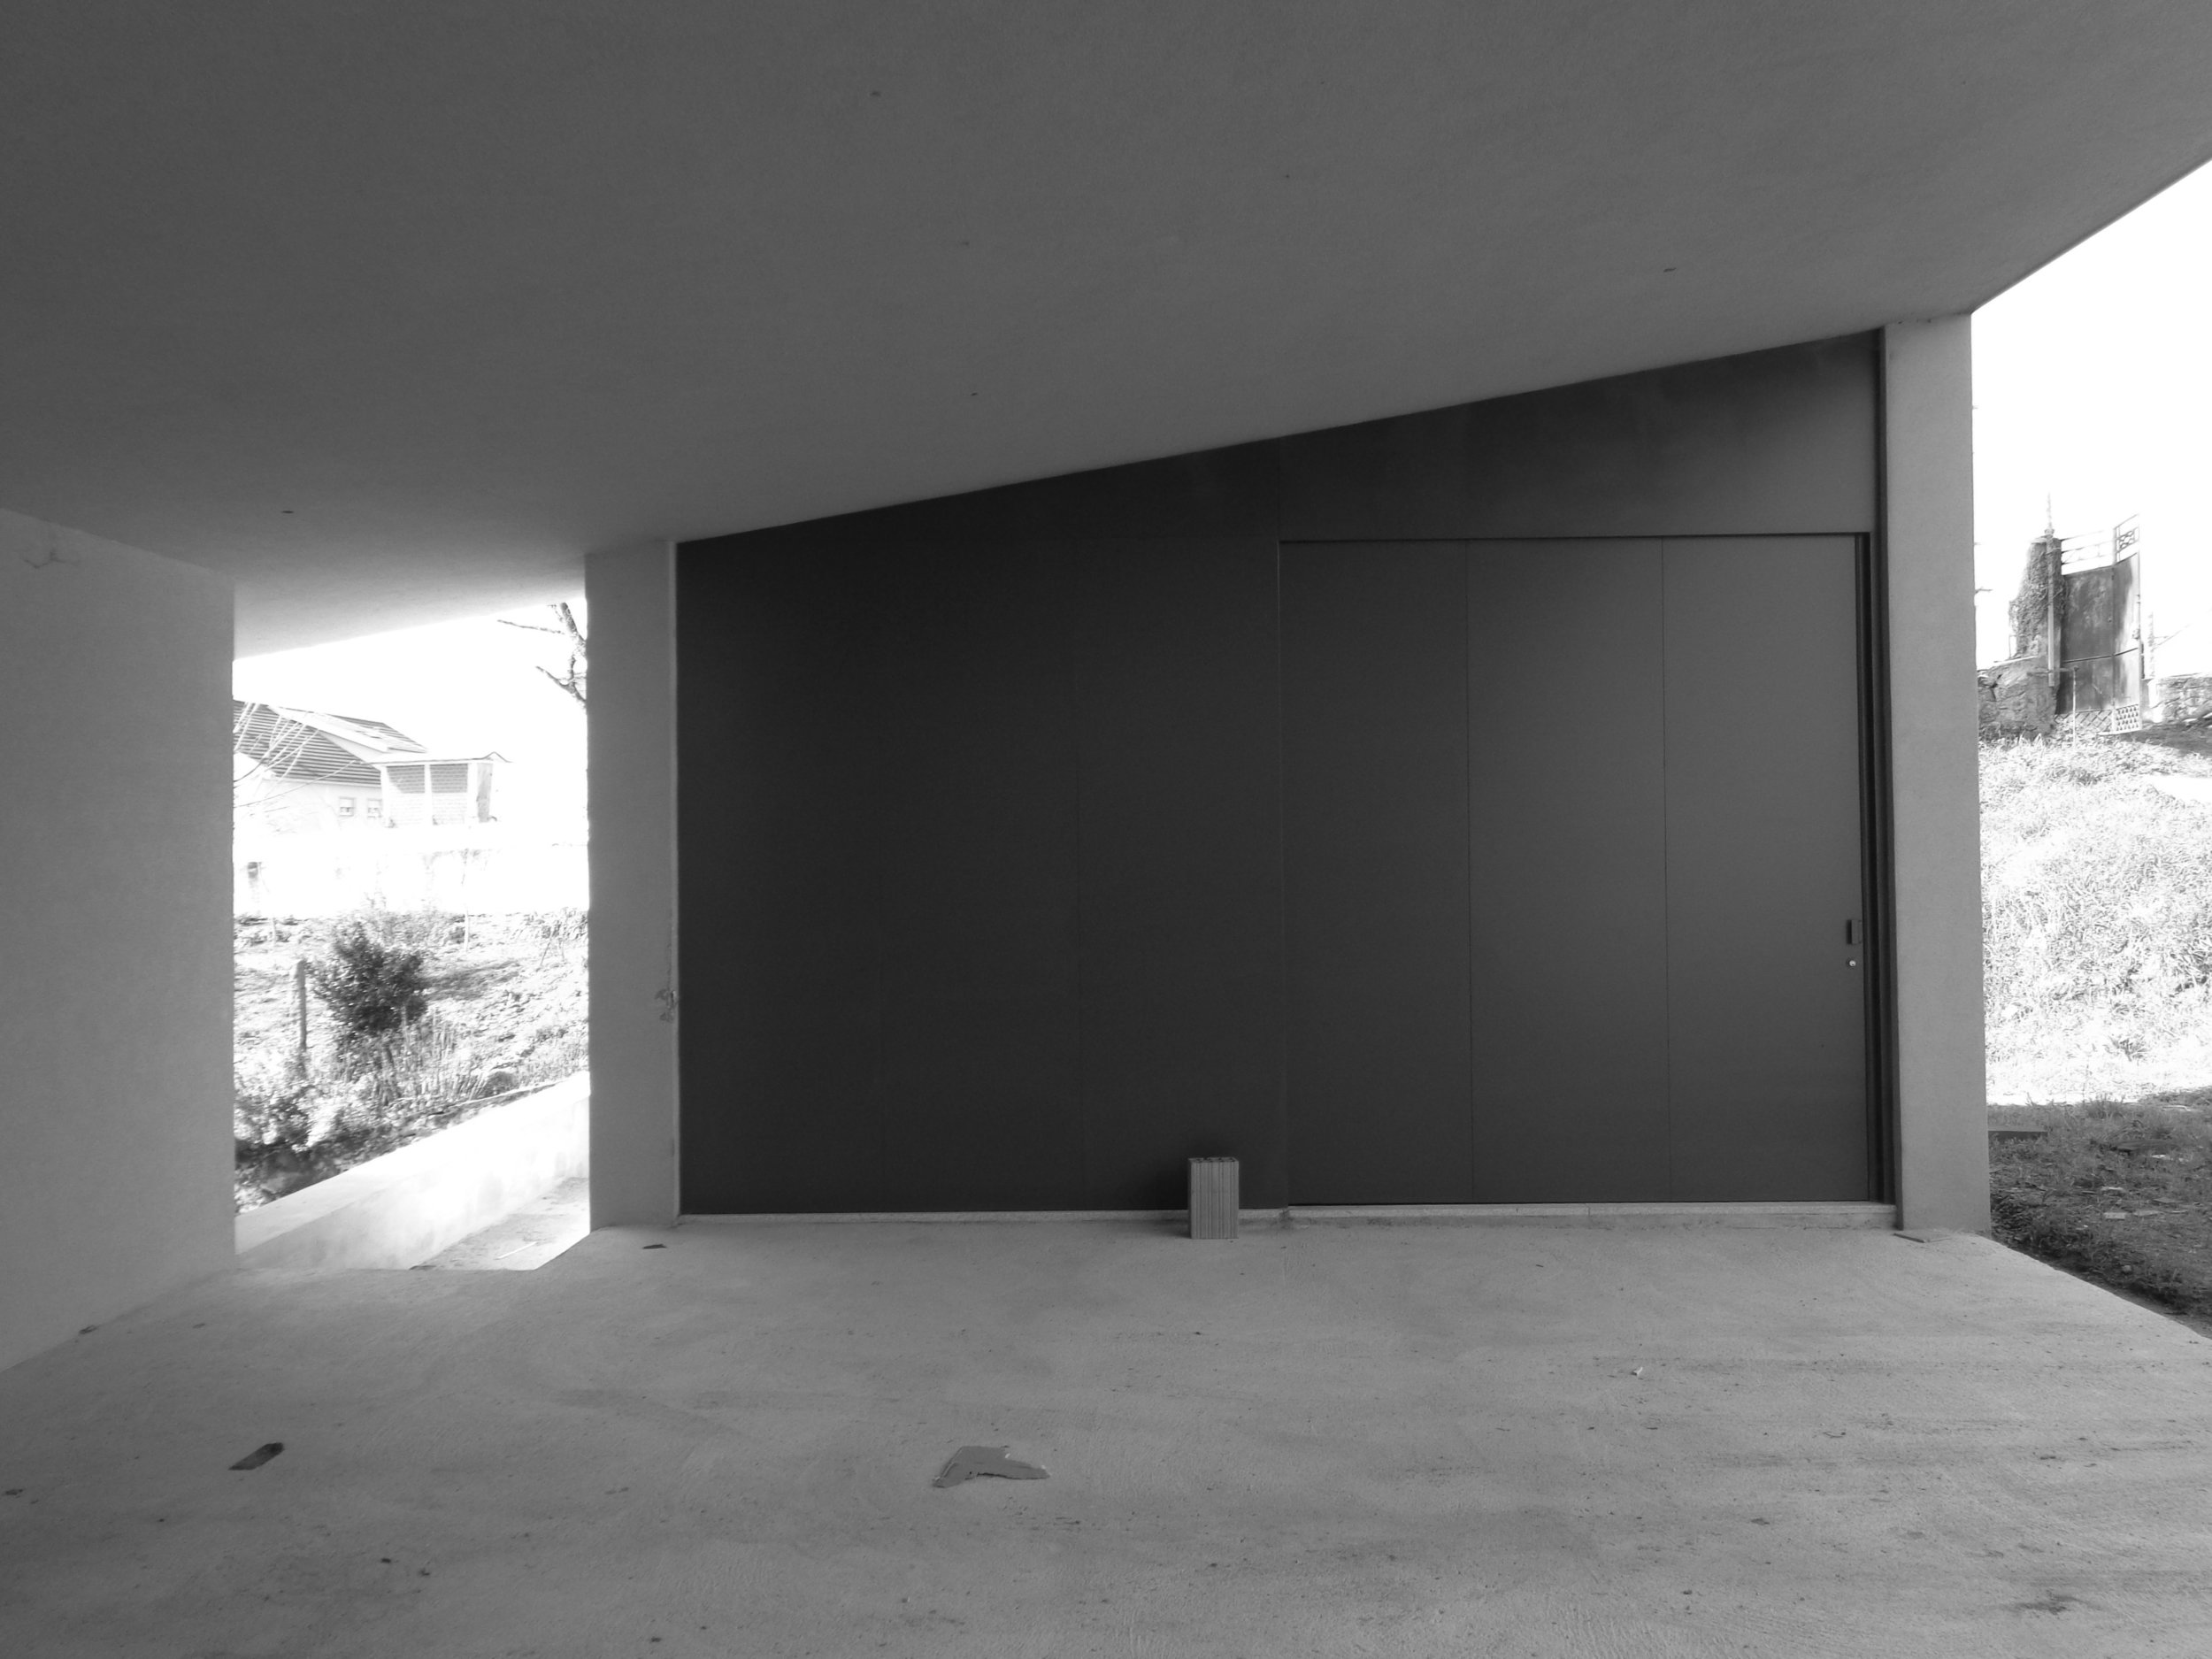 Moradia S+N - arquitectura - arquitectos - porto - oliveira de azemeis - construção - projecto - eva evolutionary architecture (3).jpg